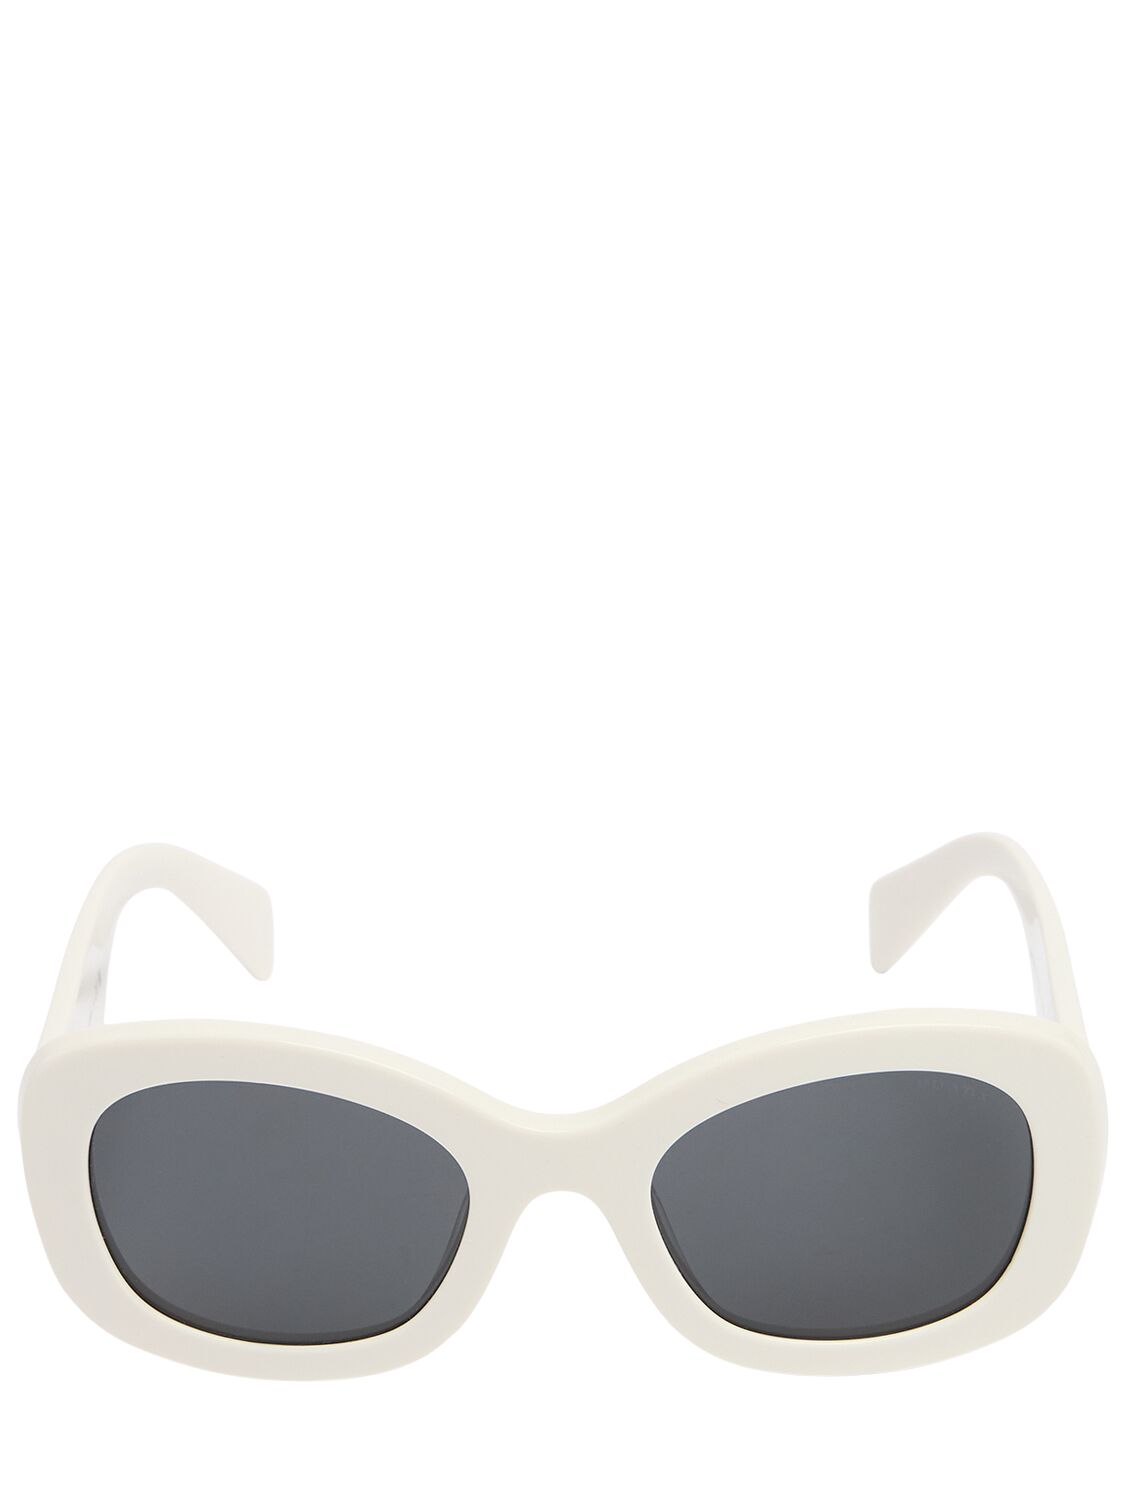 Prada Square Acetate Sunglasses In White/black